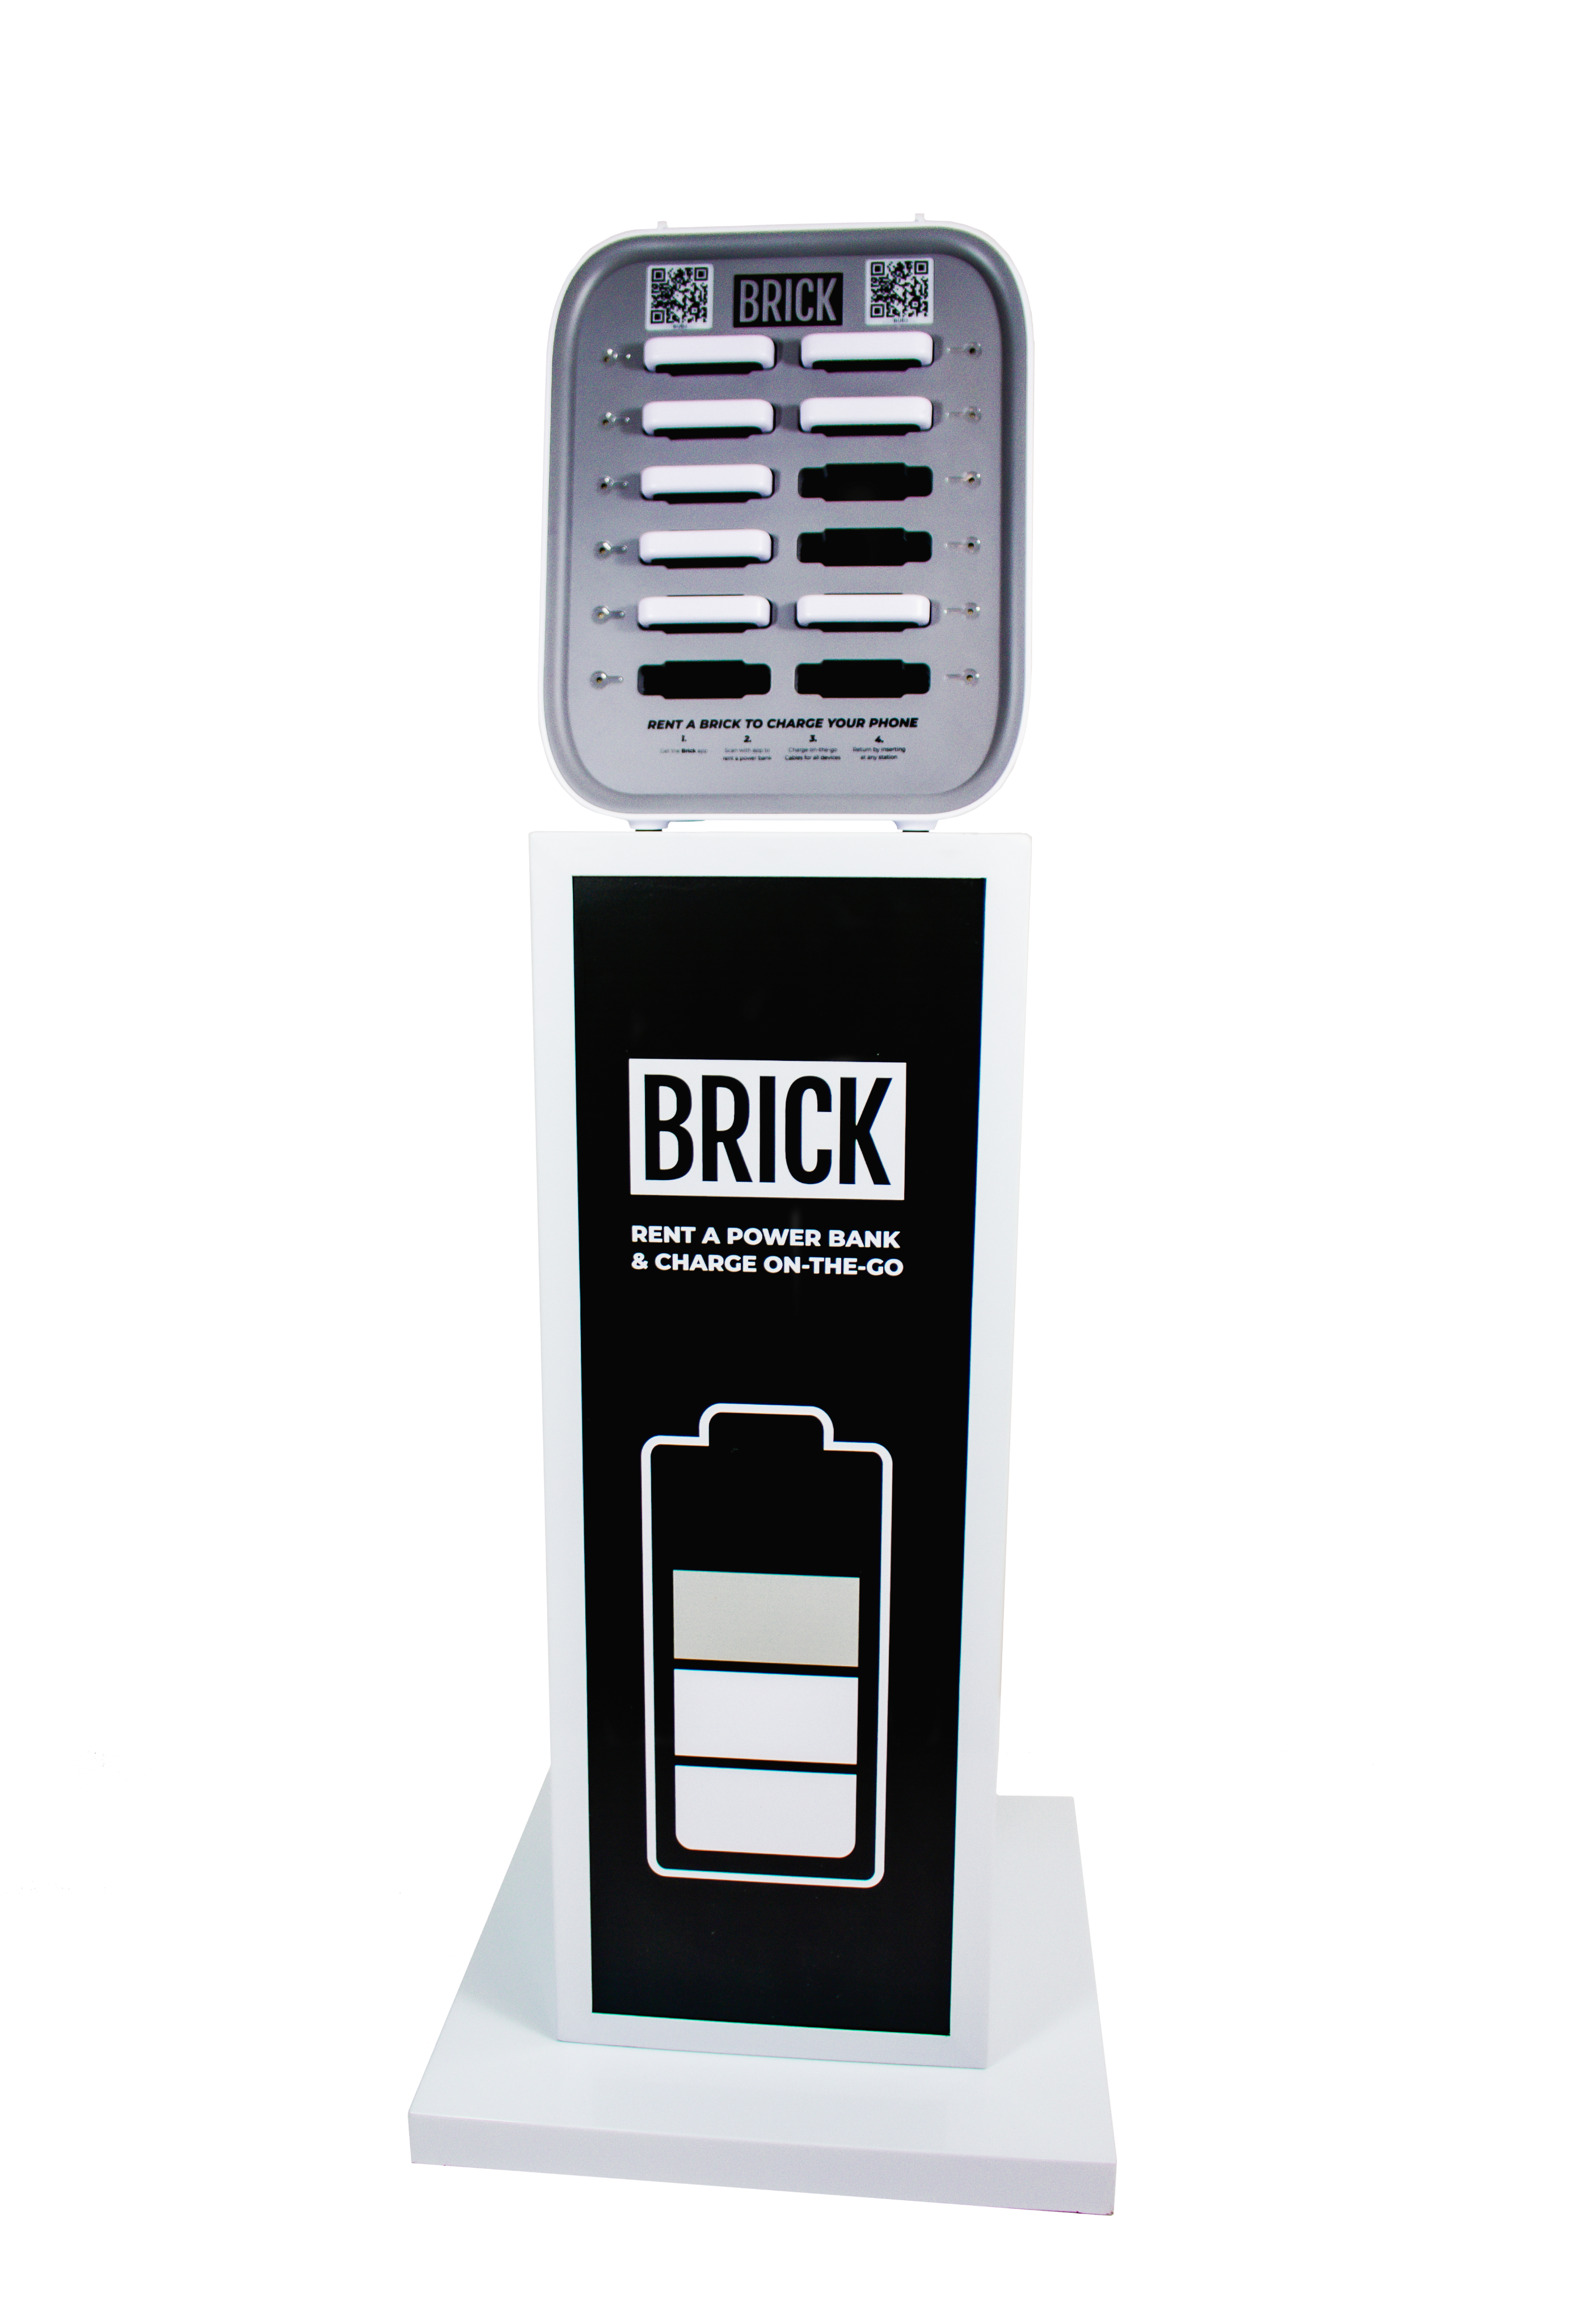 Stanica na prenájom dvanástich slotov Brick na stánku